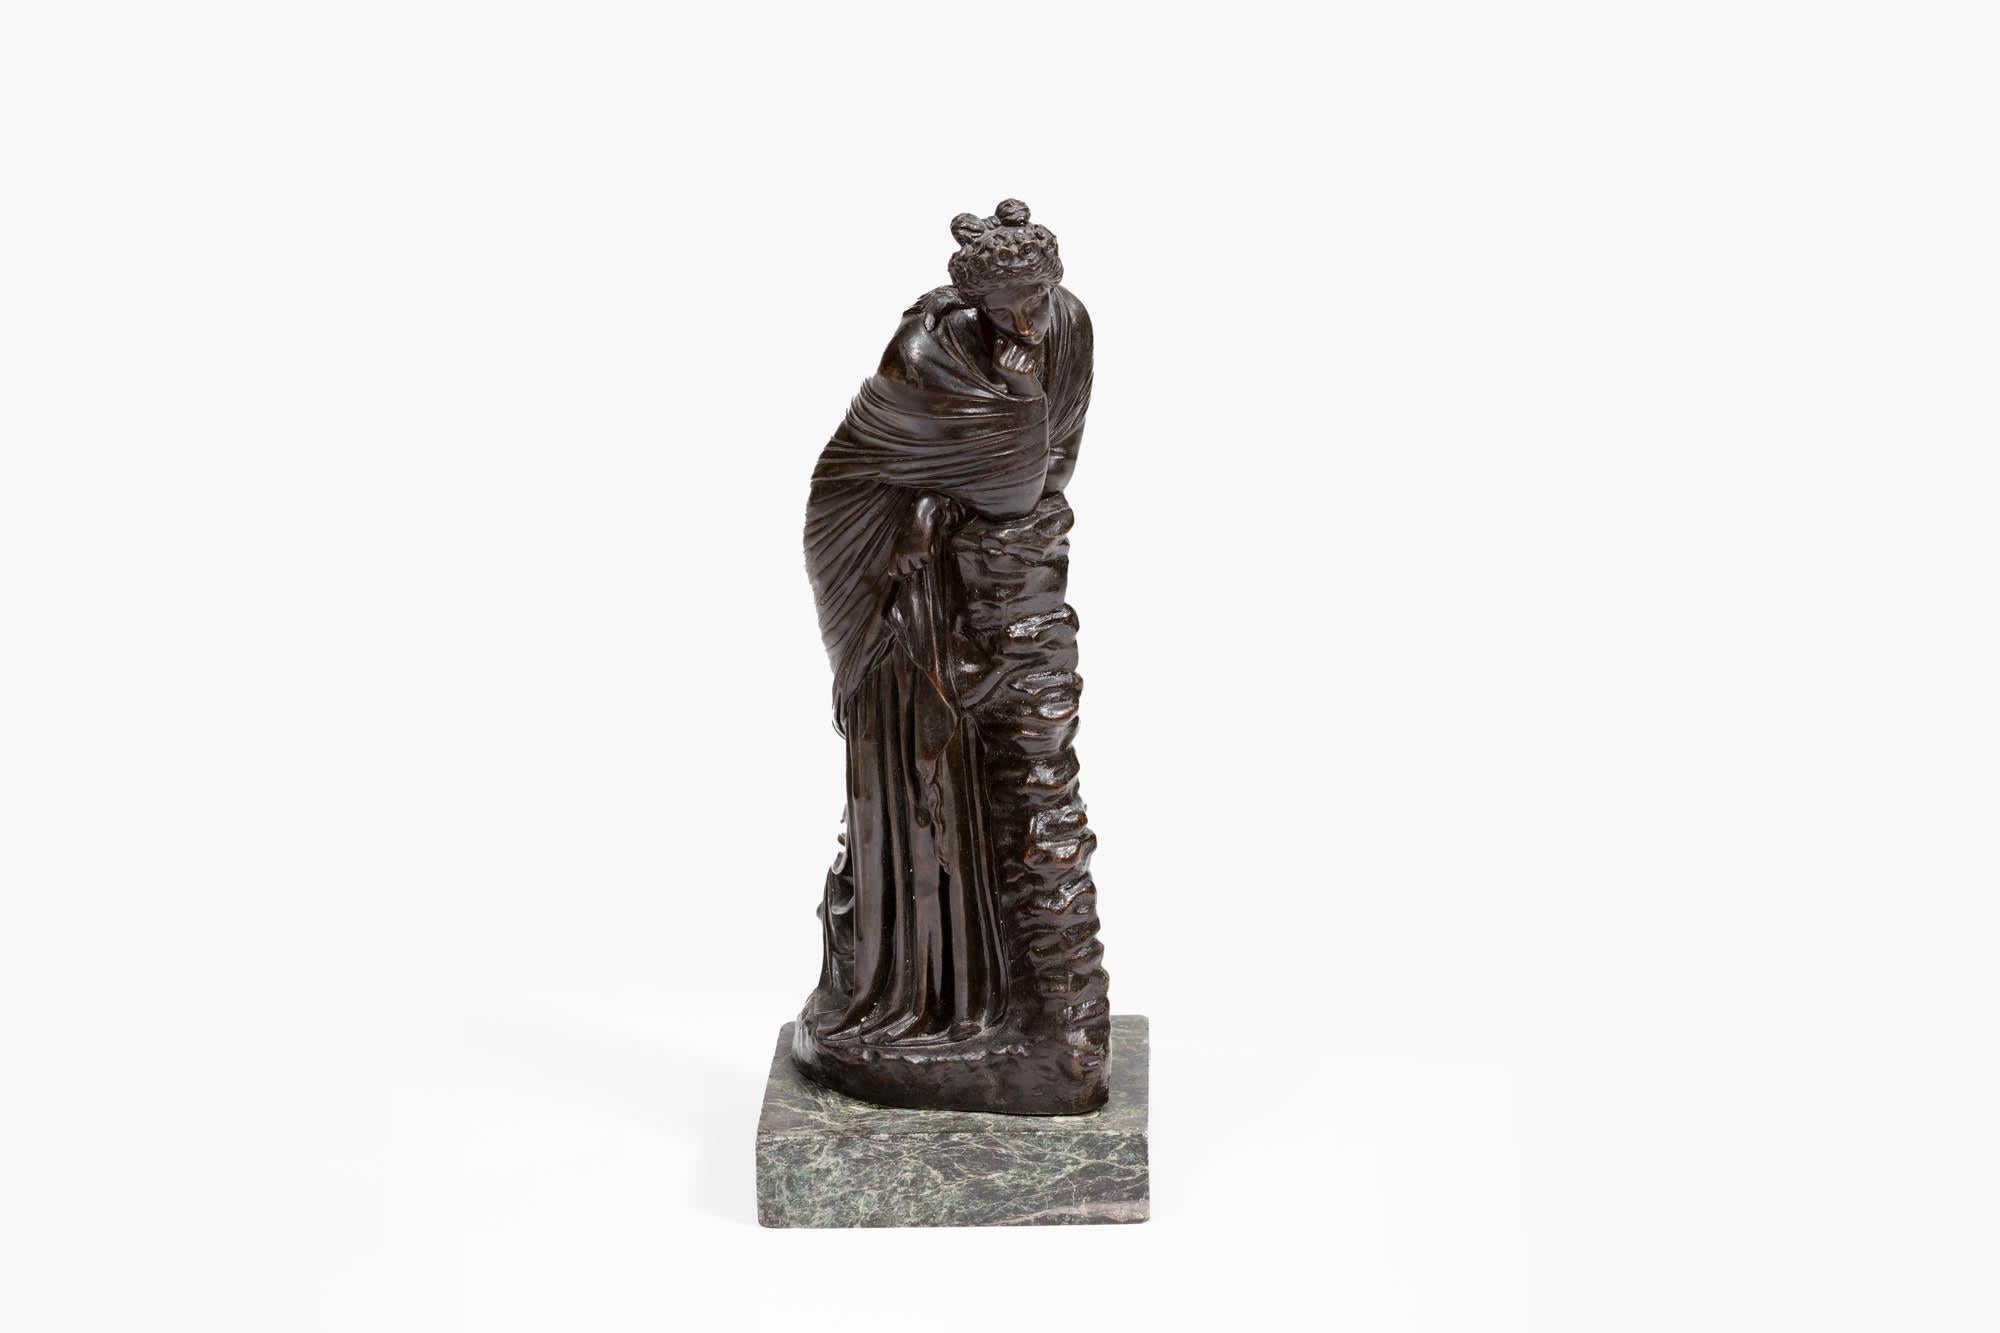 Irish 19th Century Grand Tour Bronze Figurine of Polyhymnia Daughter of Zeus